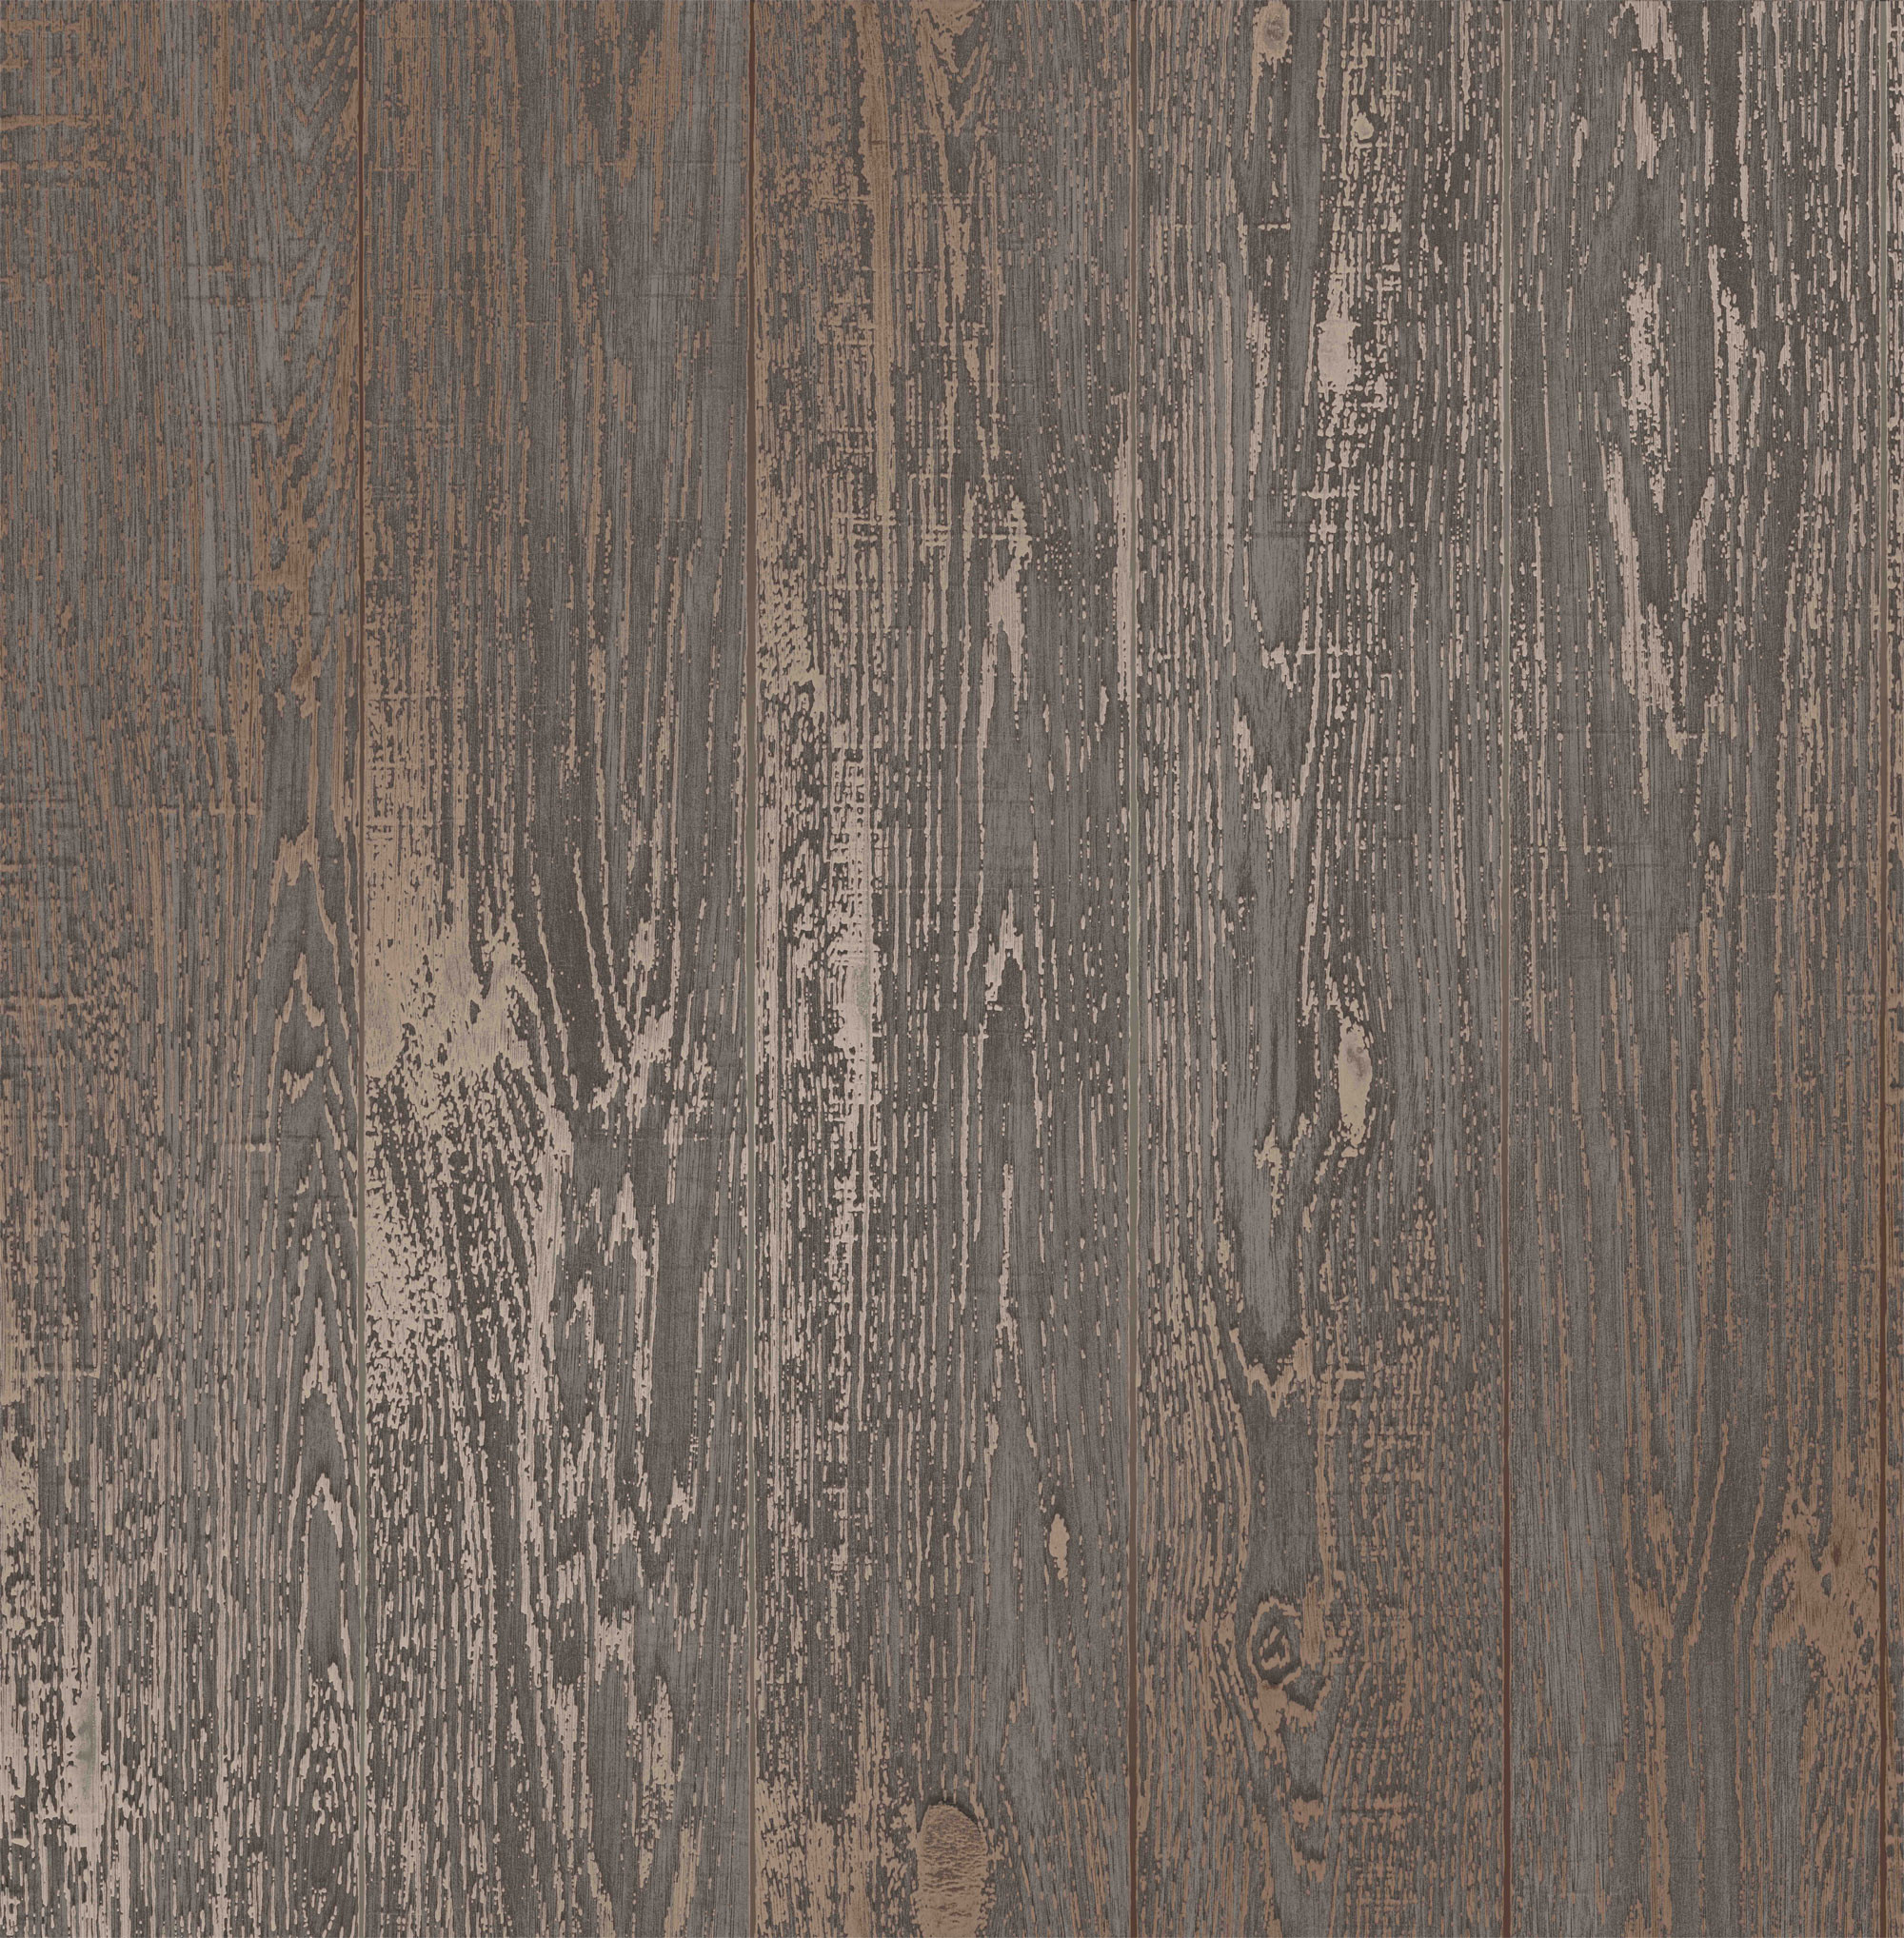 2000x2036 Brown Metallic Copper Wood Effect Wallpaper Wooden Grain .